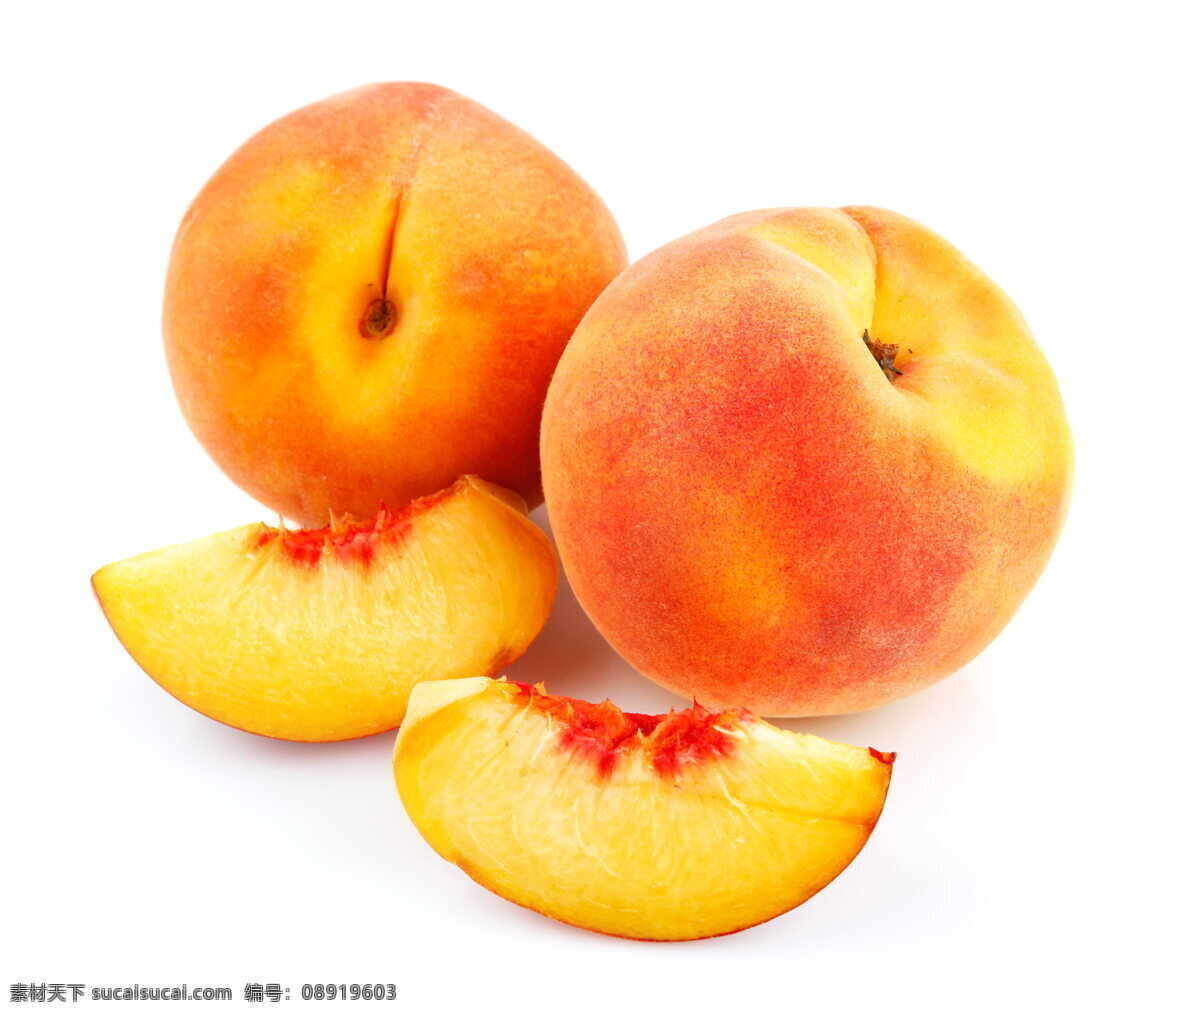 新鲜黄桃 新鲜水果 黄桃 桃子 黄色桃子 新鲜 果肉 果子 果实 食物 水果 美食 生物世界